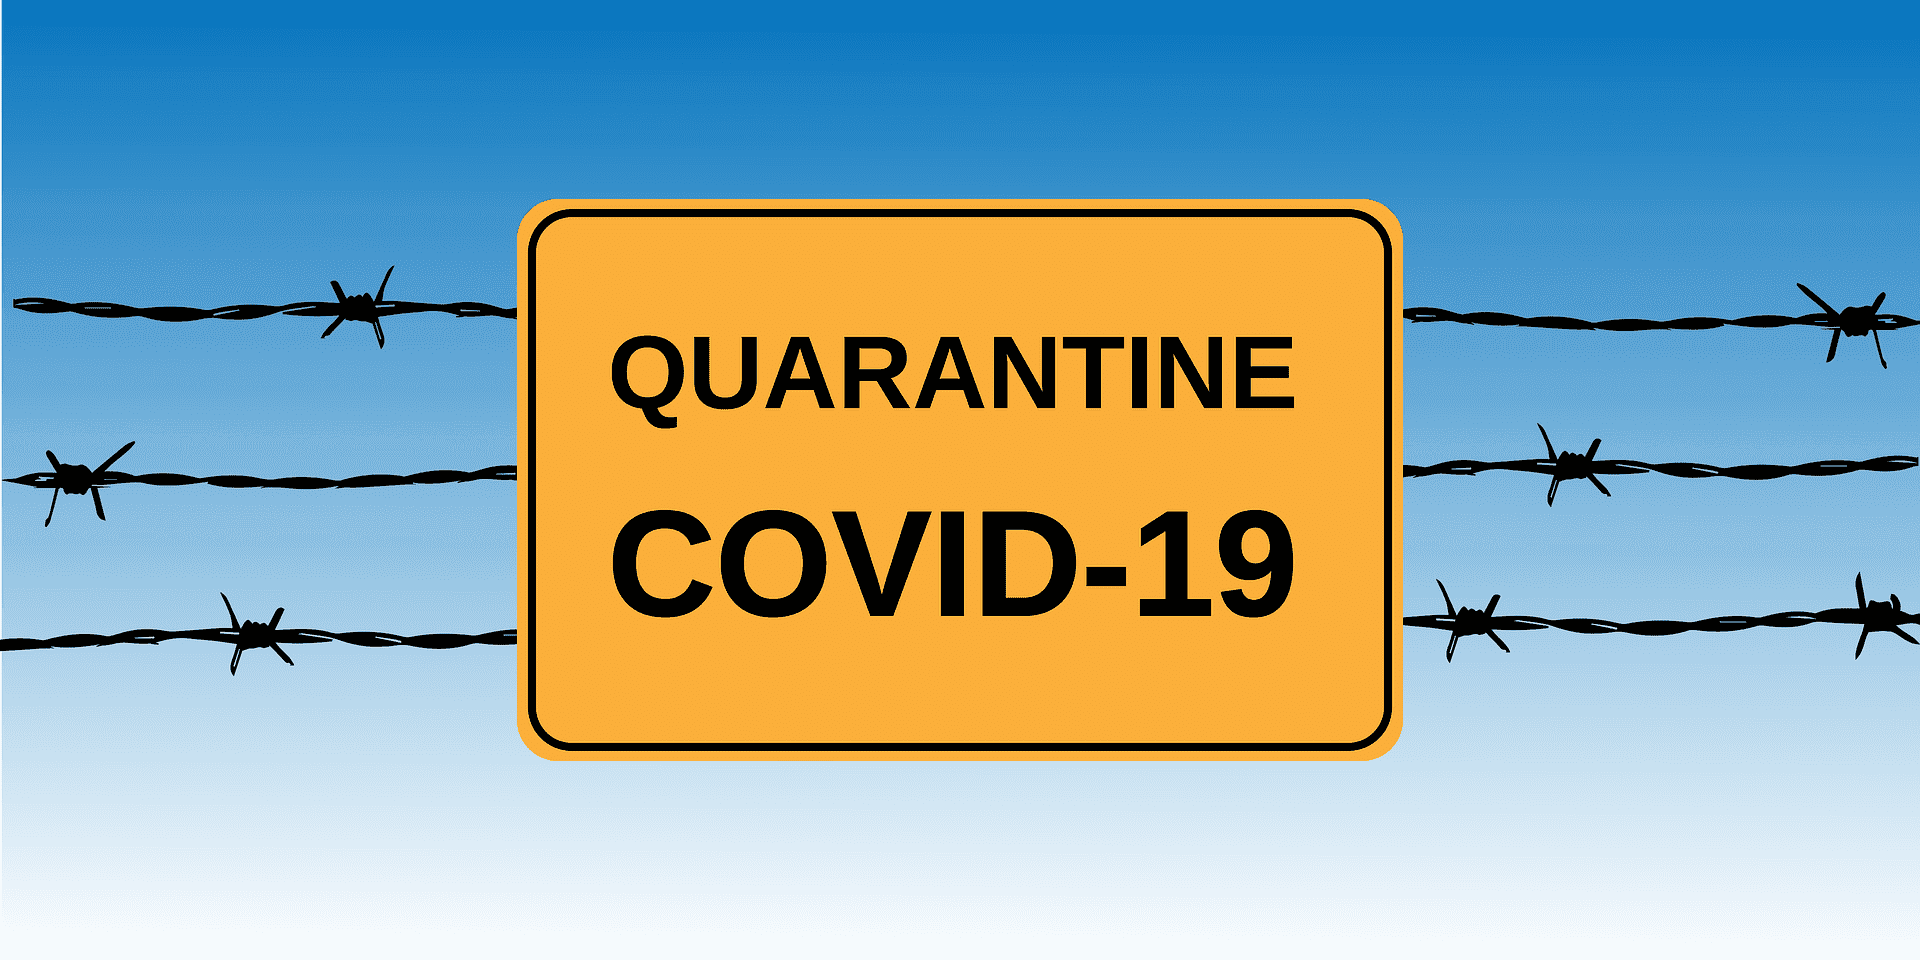 insigne de quarantaine au coronavirus | Source : Getty Images